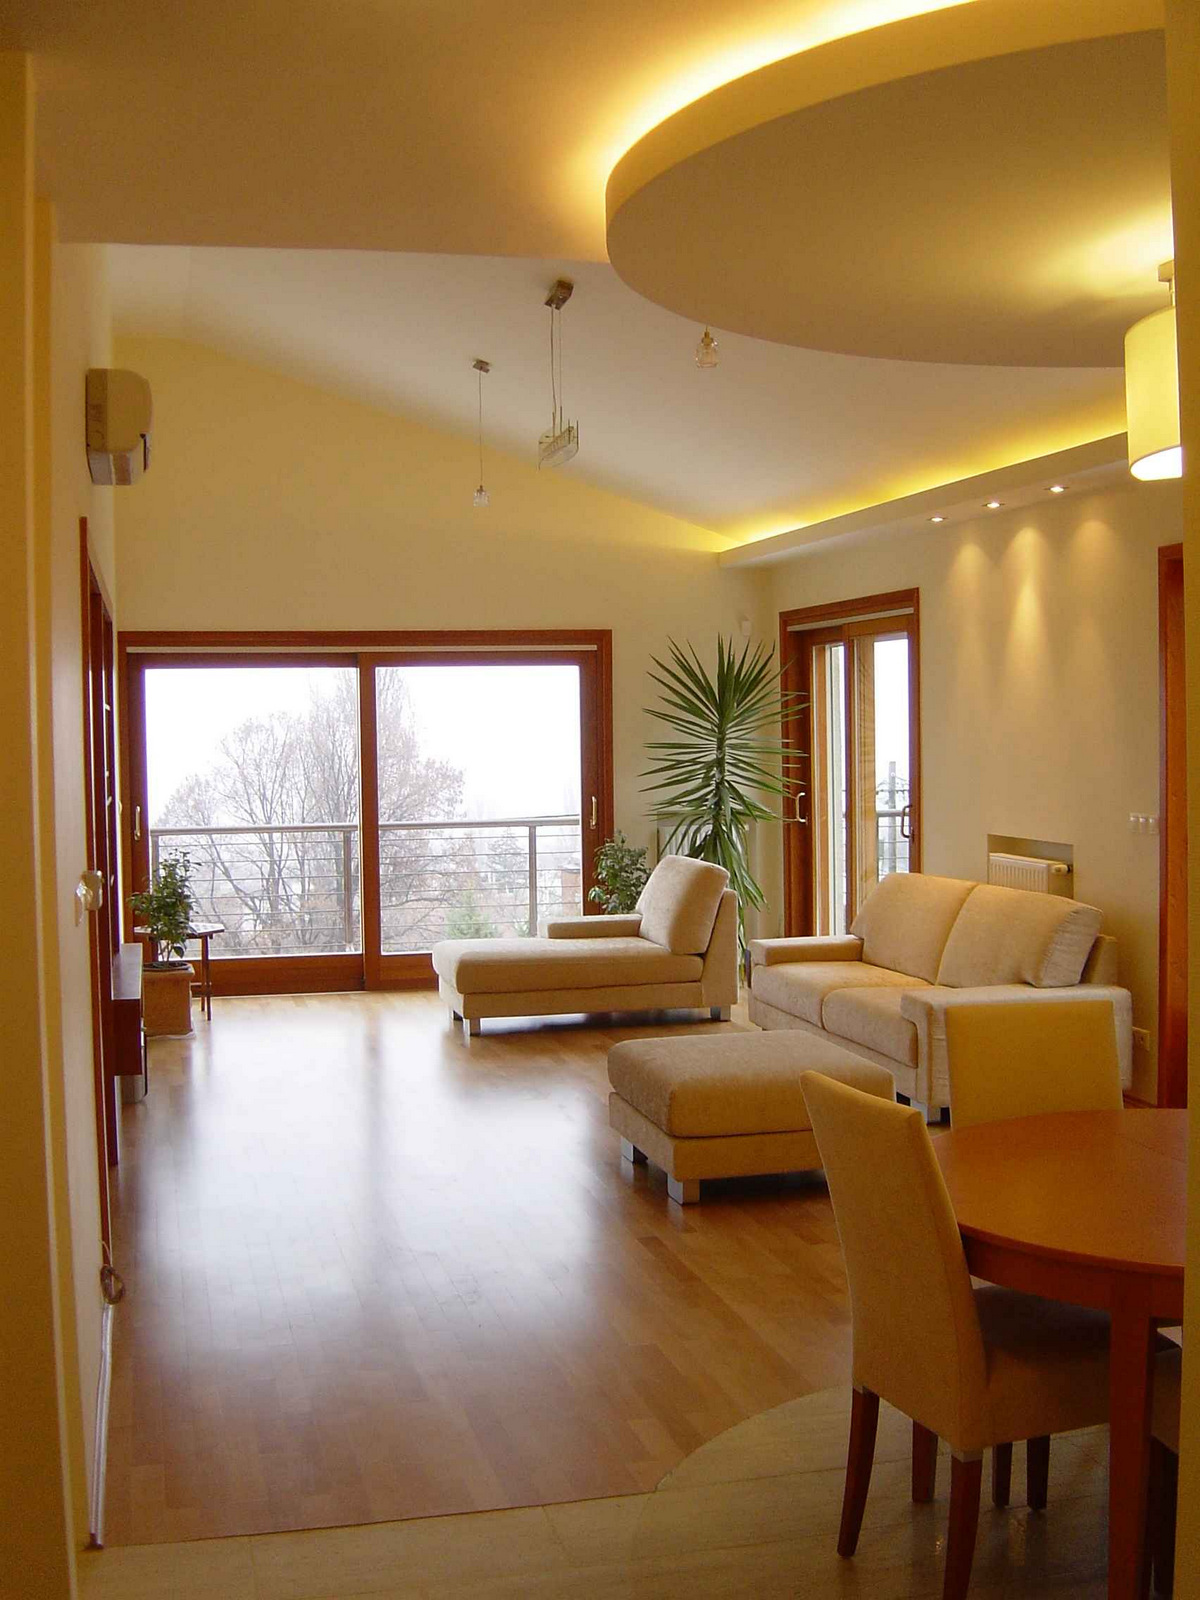 Nappali belsőépítészeti átalakítása / Living room interior architecture